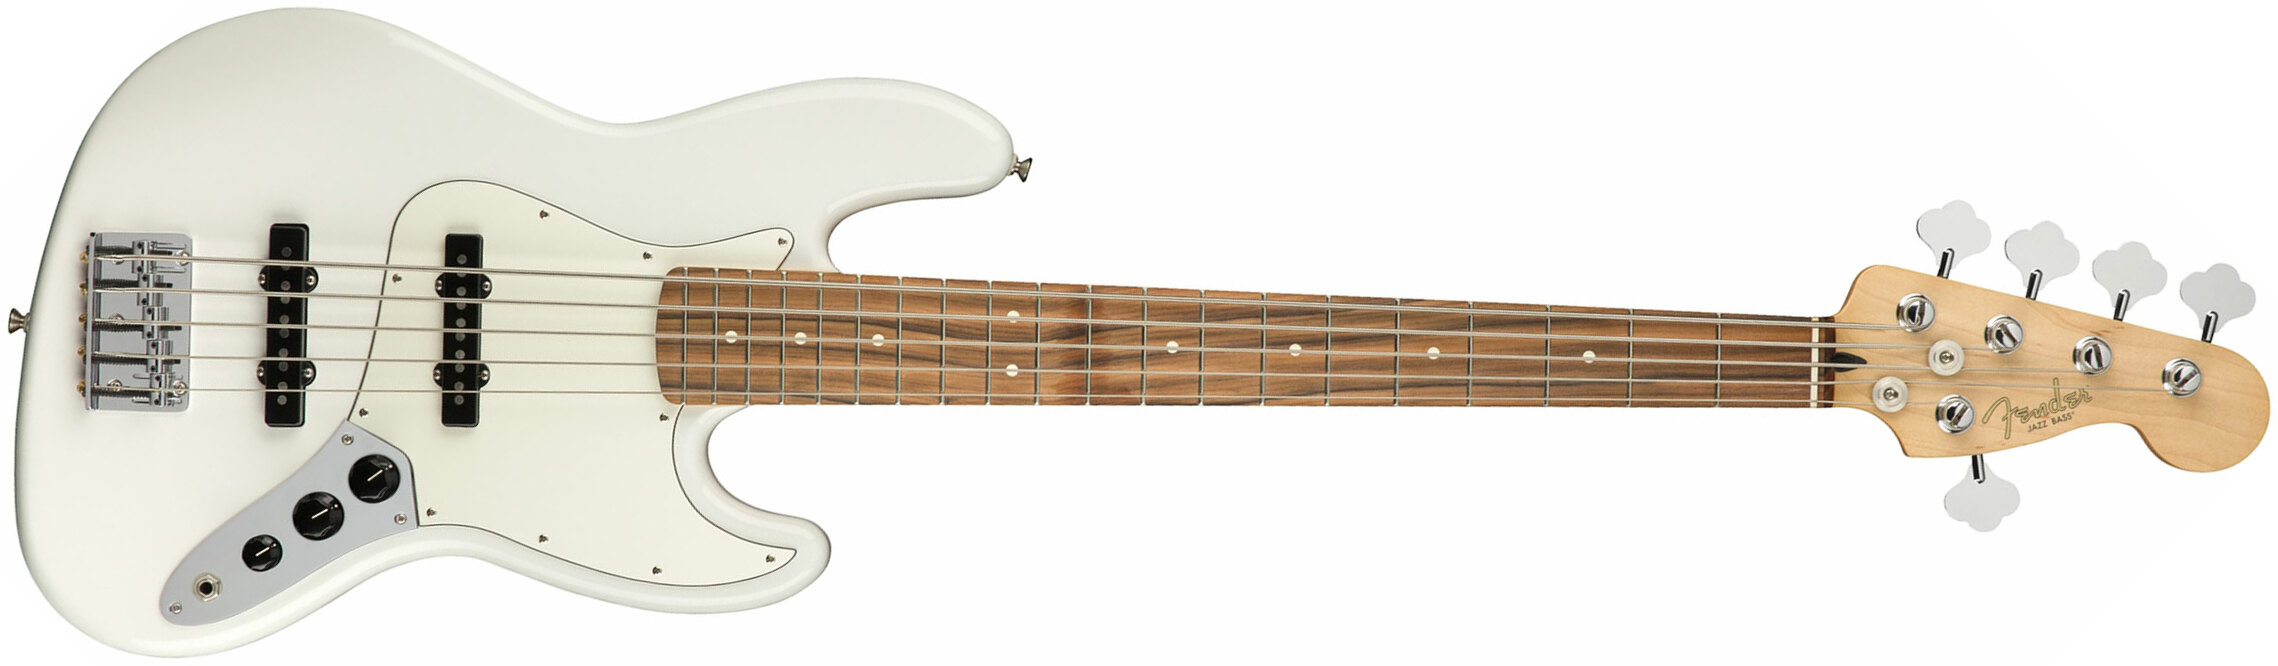 Fender Jazz Bass Player V 5-cordes Mex Pf - Polar White - Solid body elektrische bas - Main picture